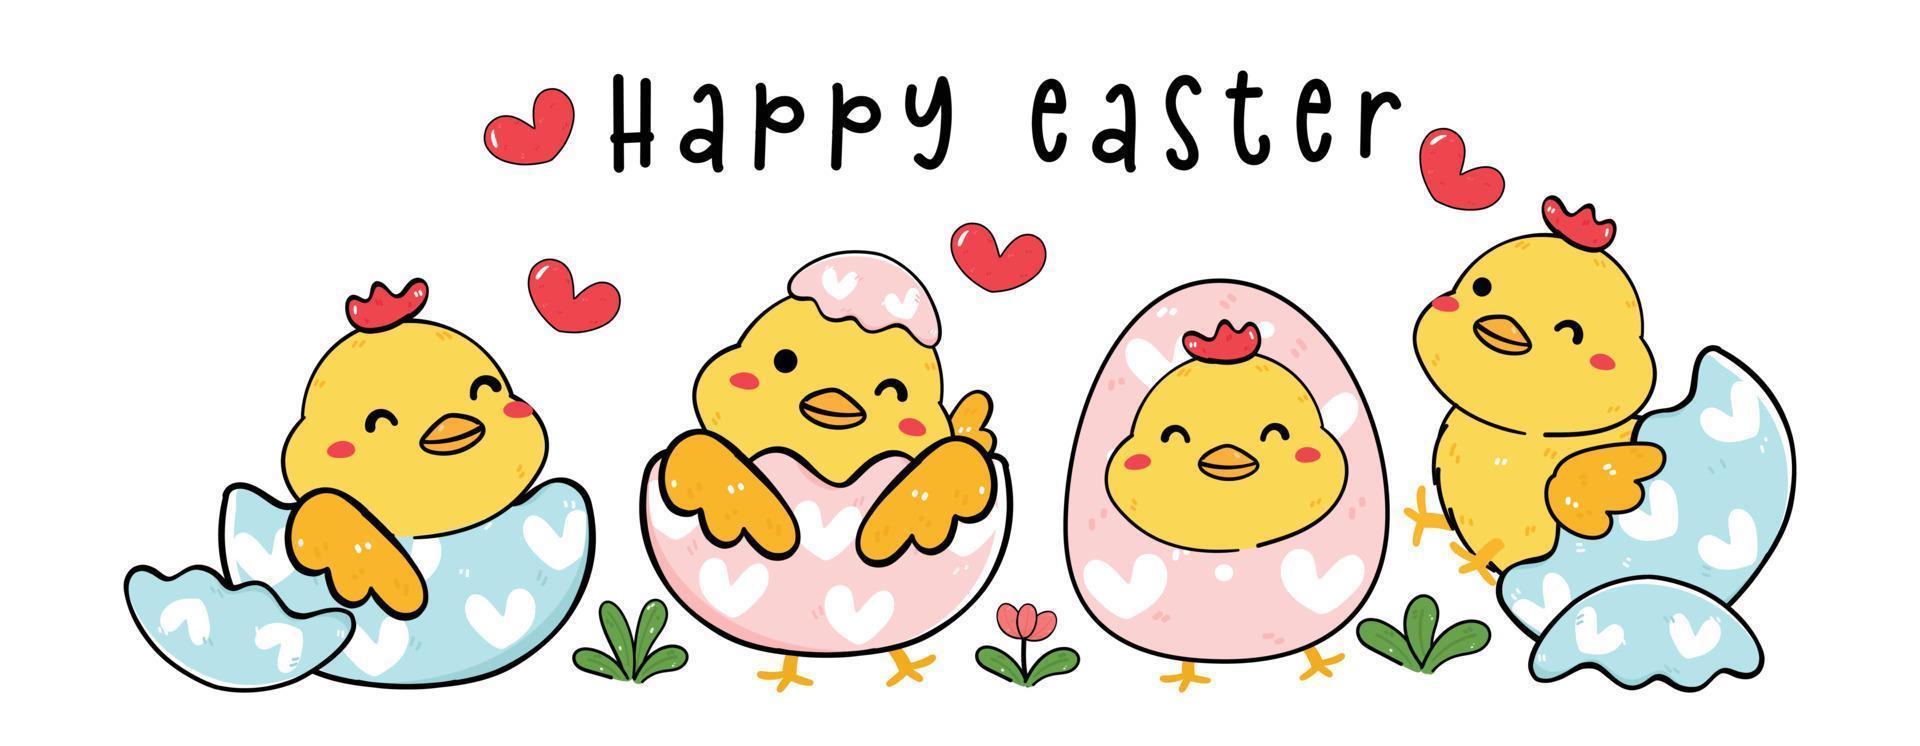 grupo de lindo bebé feliz pollito pollo en cáscara de huevo de pascua dibujo de dibujos animados banner de contorno vector